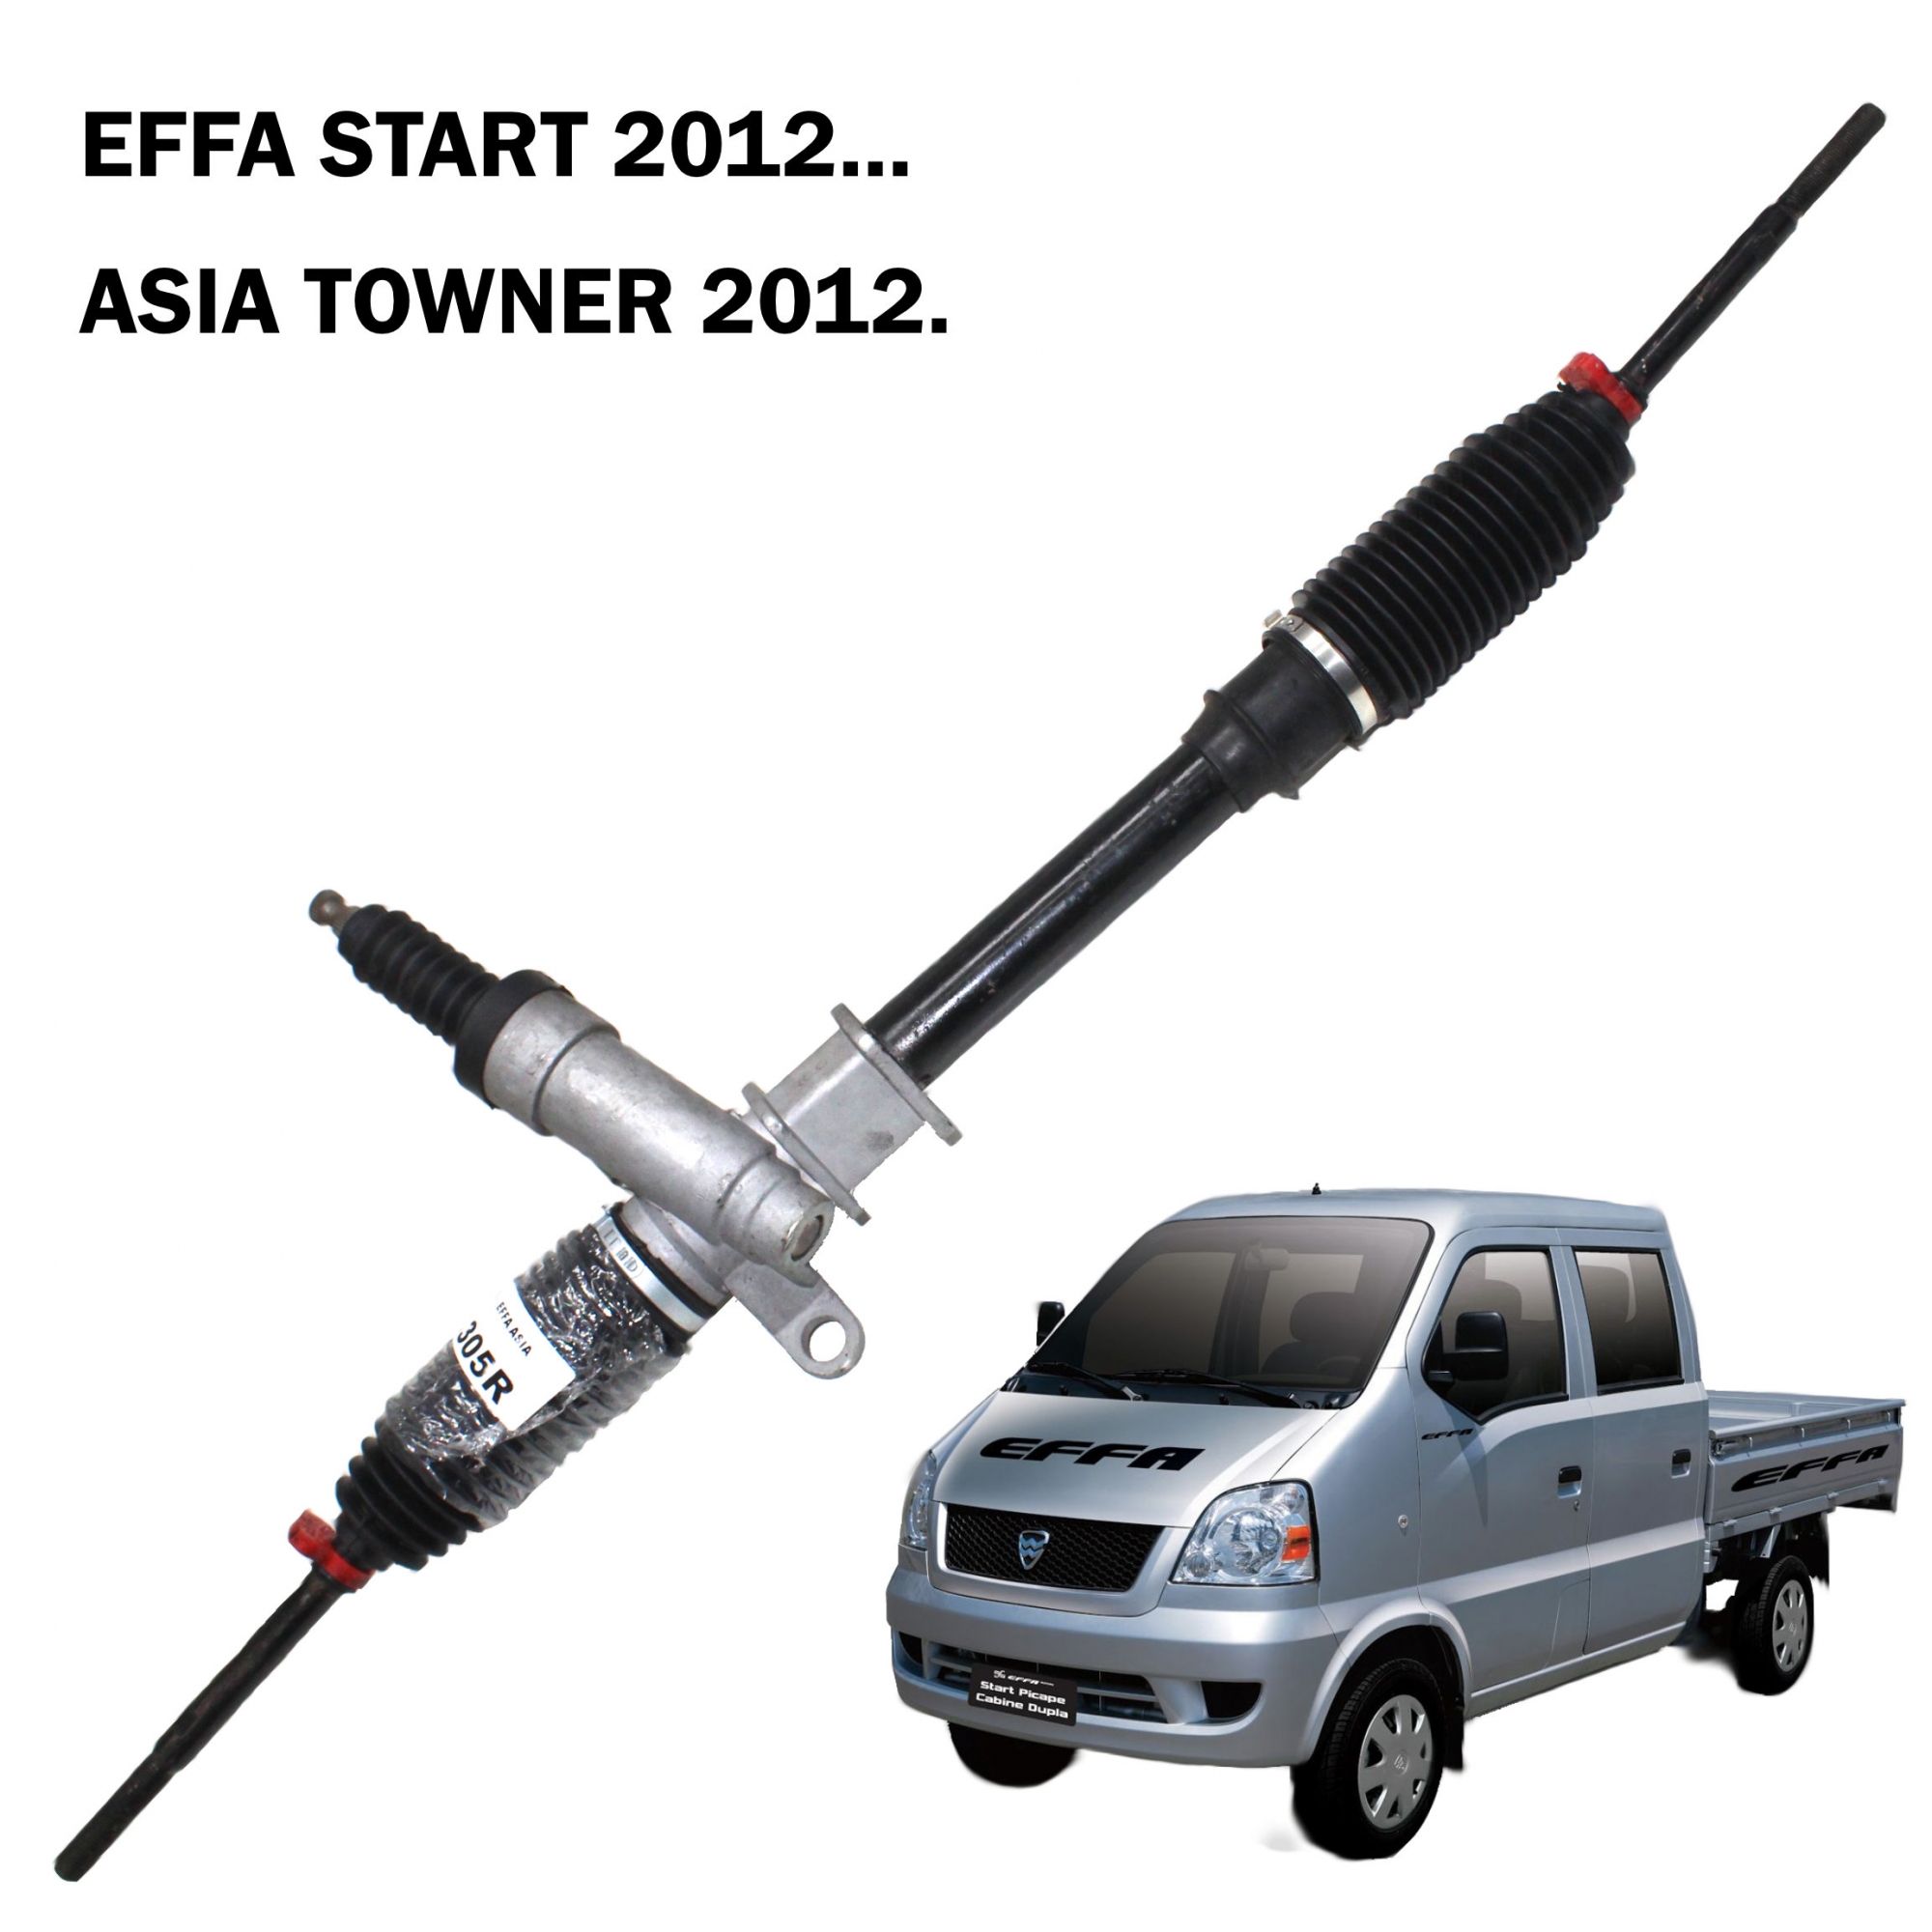 Caixa Direção Mecânica Effa Start 2012..., Asia Towner ano 2012